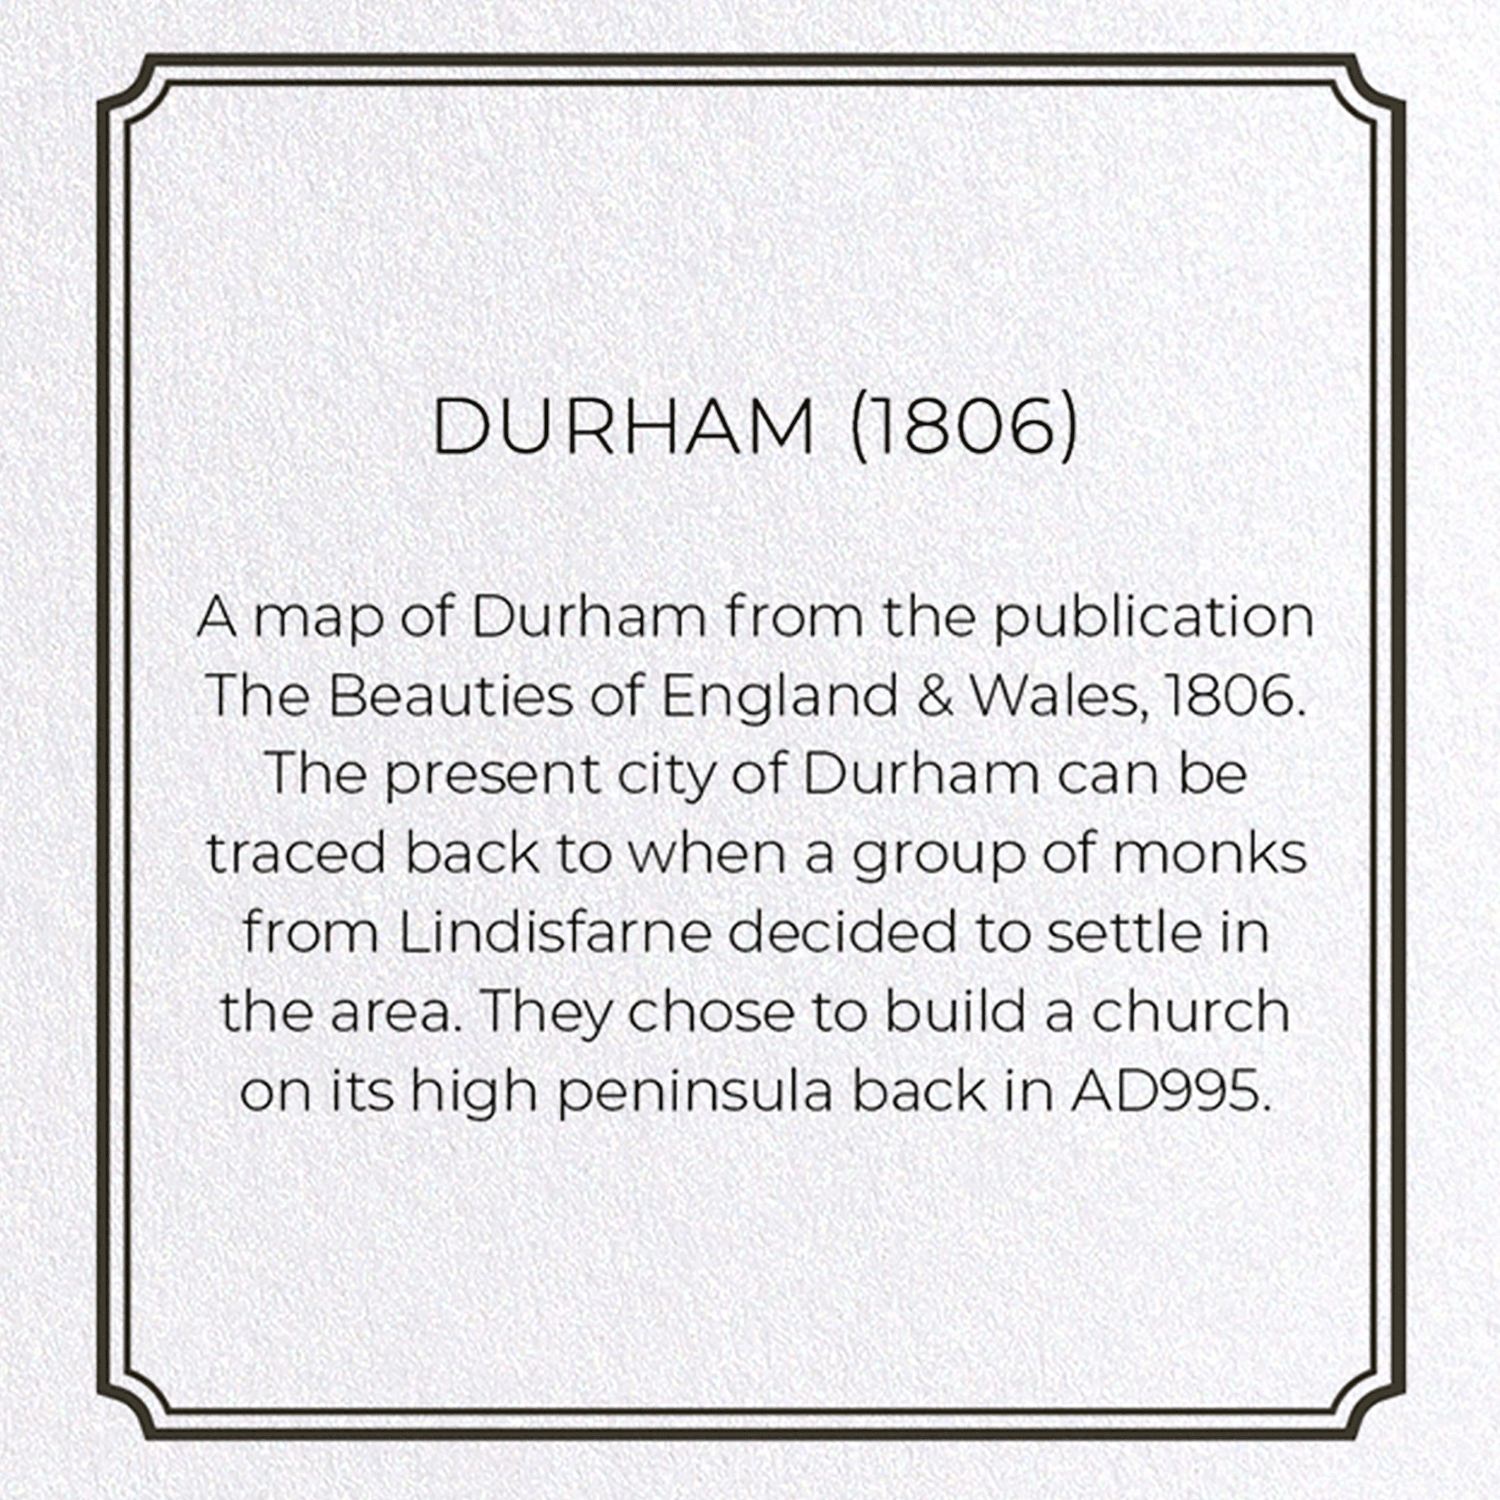 DURHAM (1806)